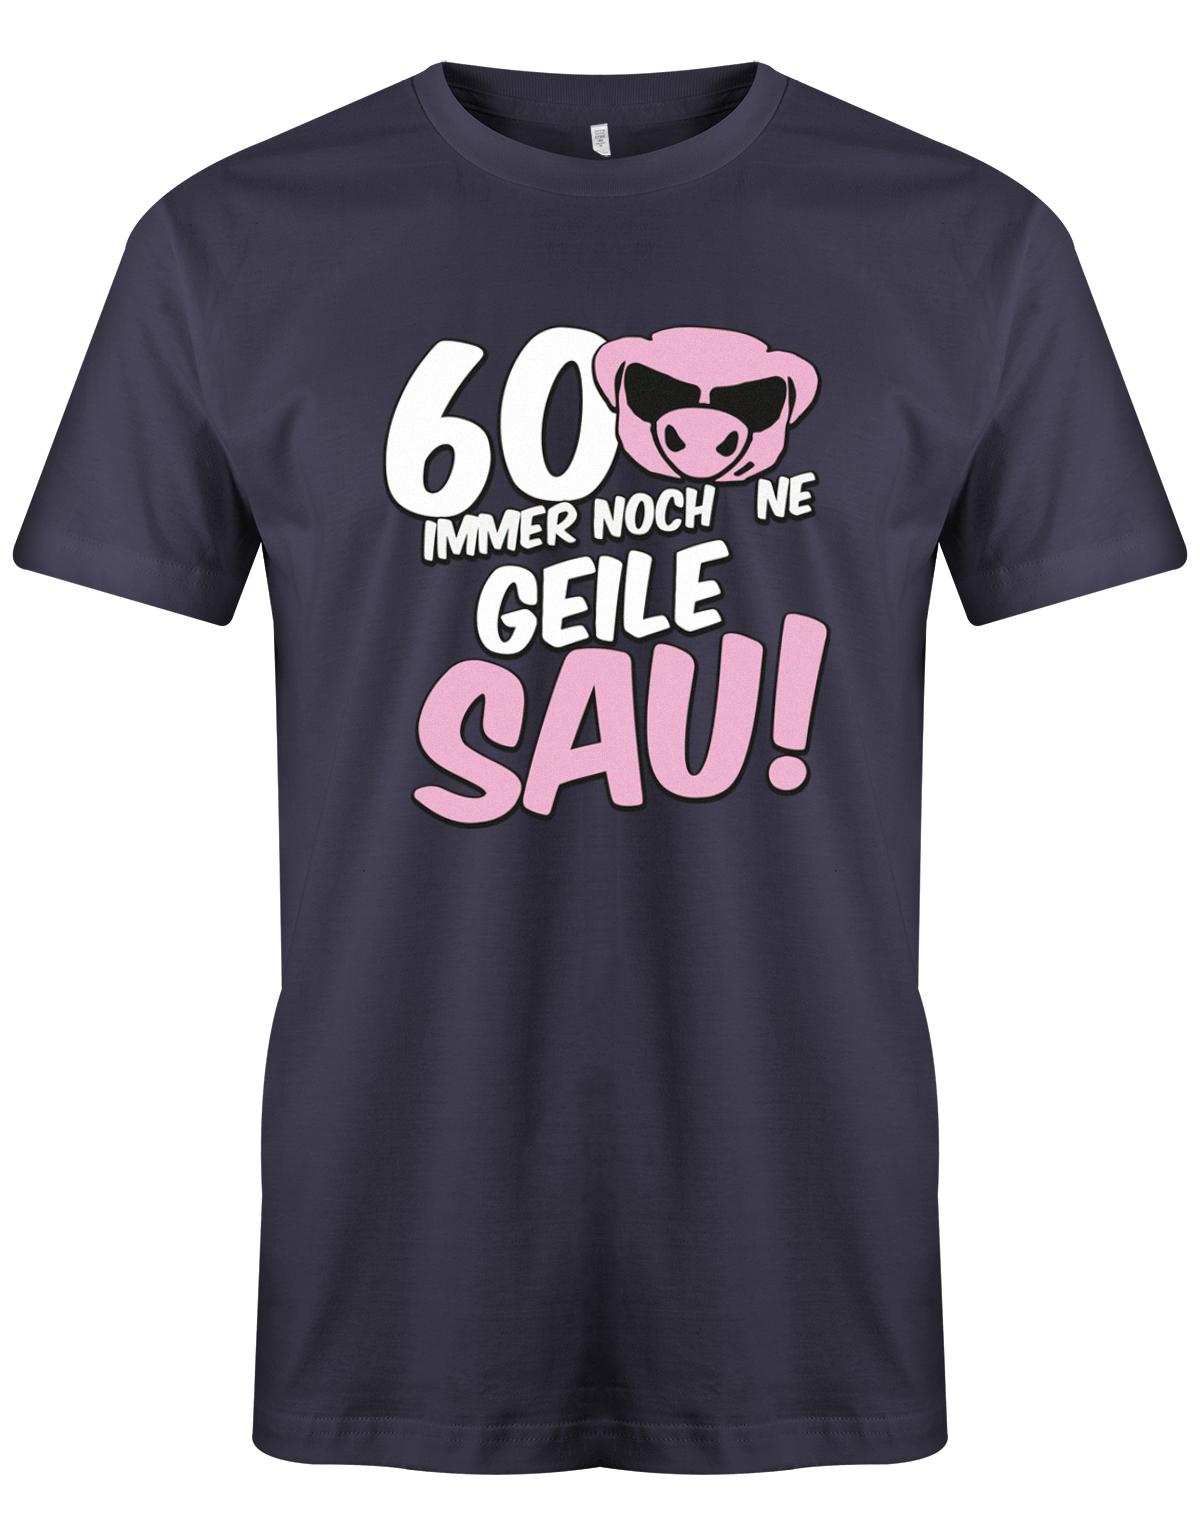 Lustiges T-Shirt zum 60 Geburtstag für den Mann Bedruckt mit 60 Immer noch 'ne geile Sau! Sau mit Sonnenbrille Navy